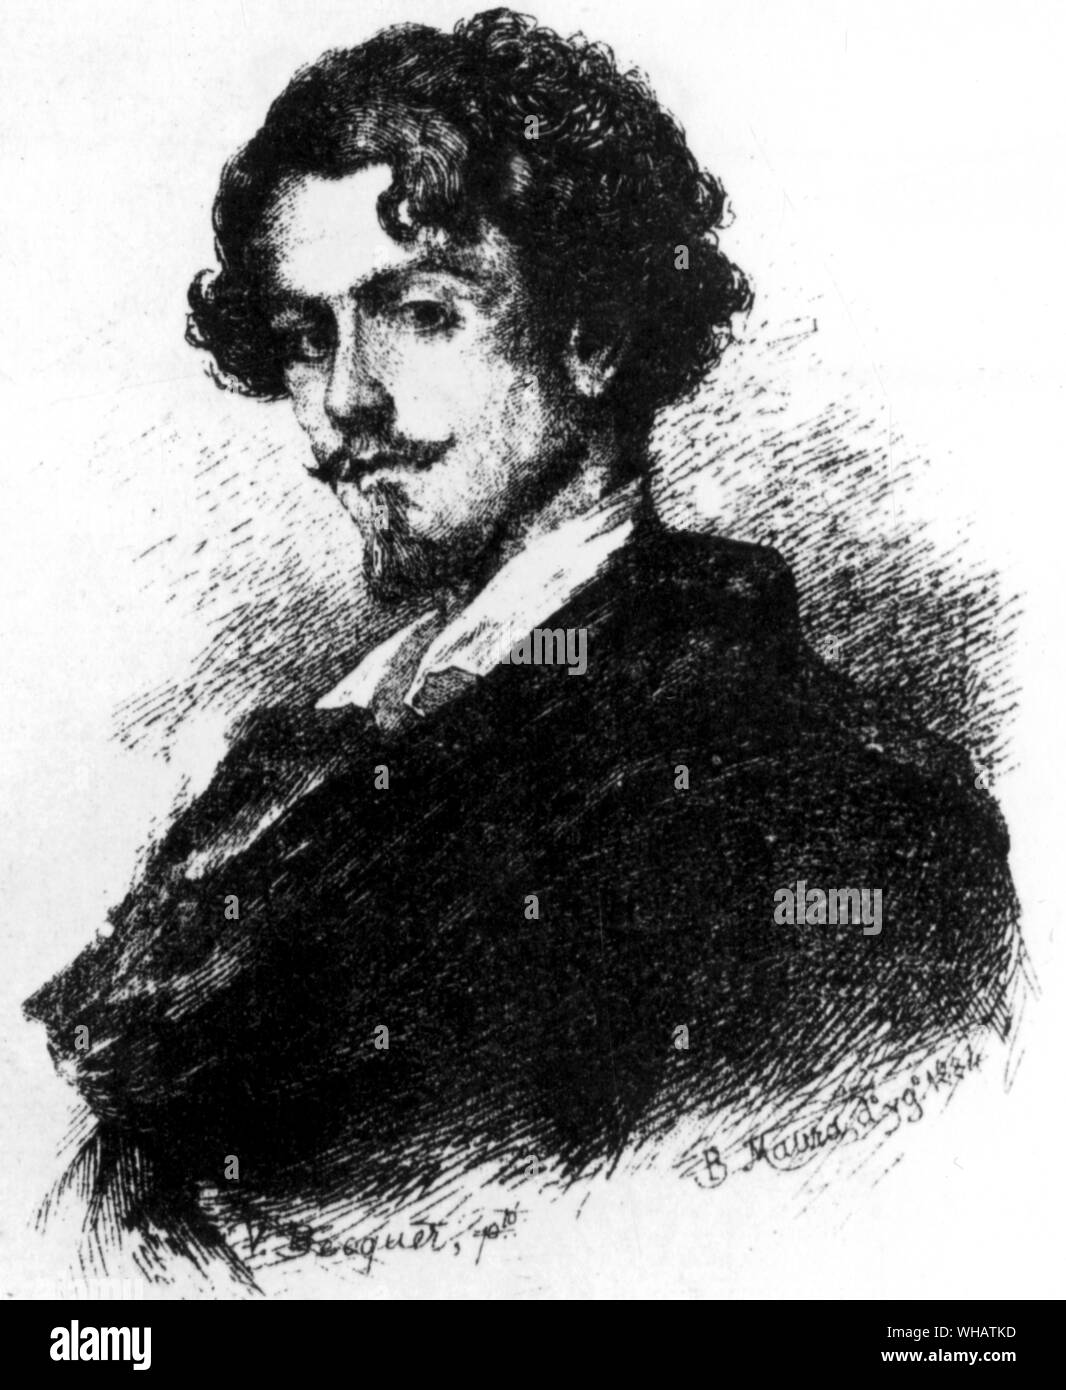 Gustavo Adolfo Bécquer (1836-1870). L'écrivain espagnol de la poésie et des nouvelles, maintenant considéré comme l'un des personnages les plus importants dans la littérature espagnole. Il est considéré comme le fondateur du lyrisme espagnol moderne. Banque D'Images